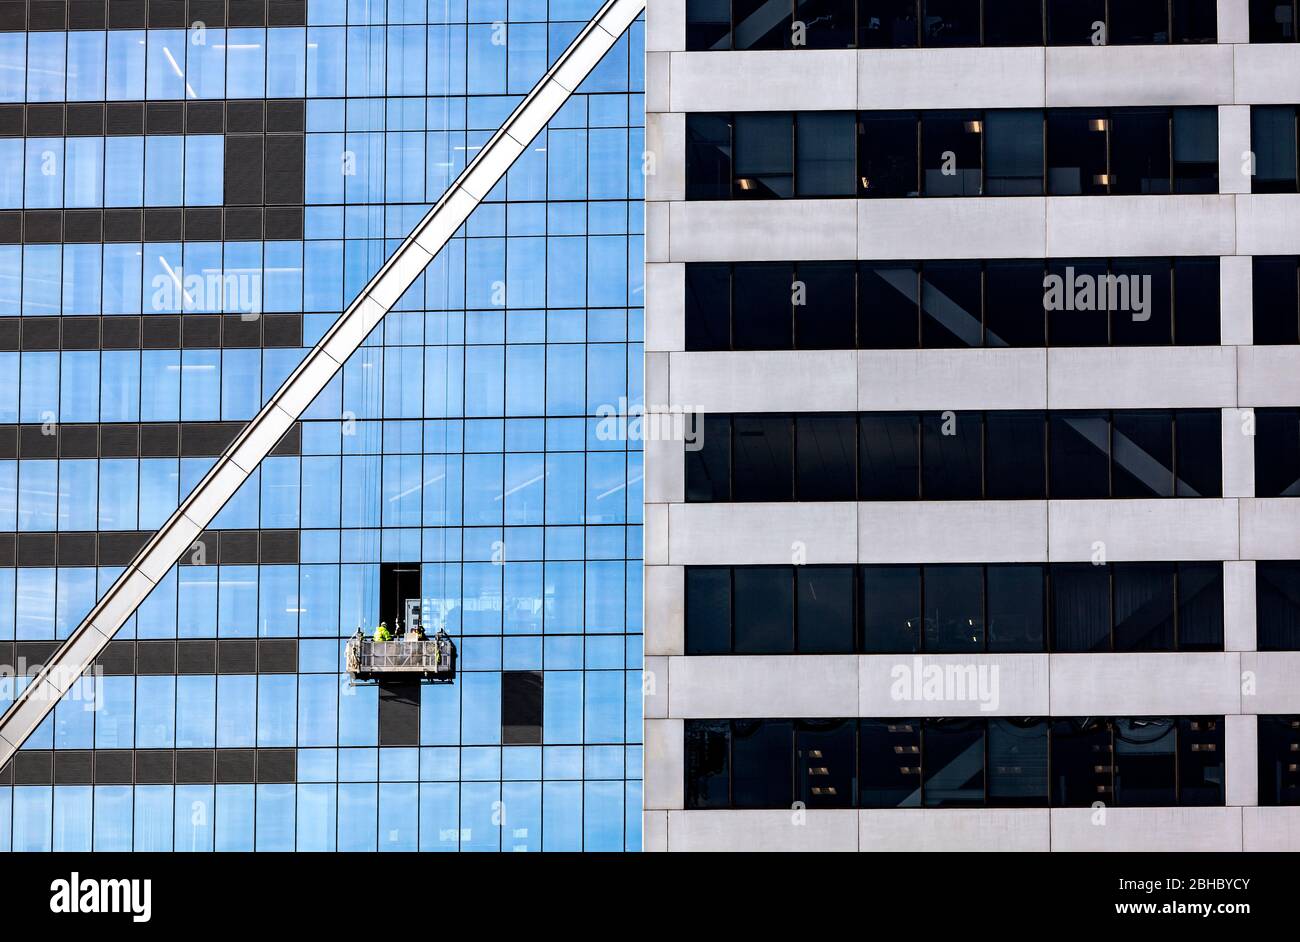 WA17439-00...WASHINGTON - hohe reflektierende Gebäude in Seattle. Stockfoto